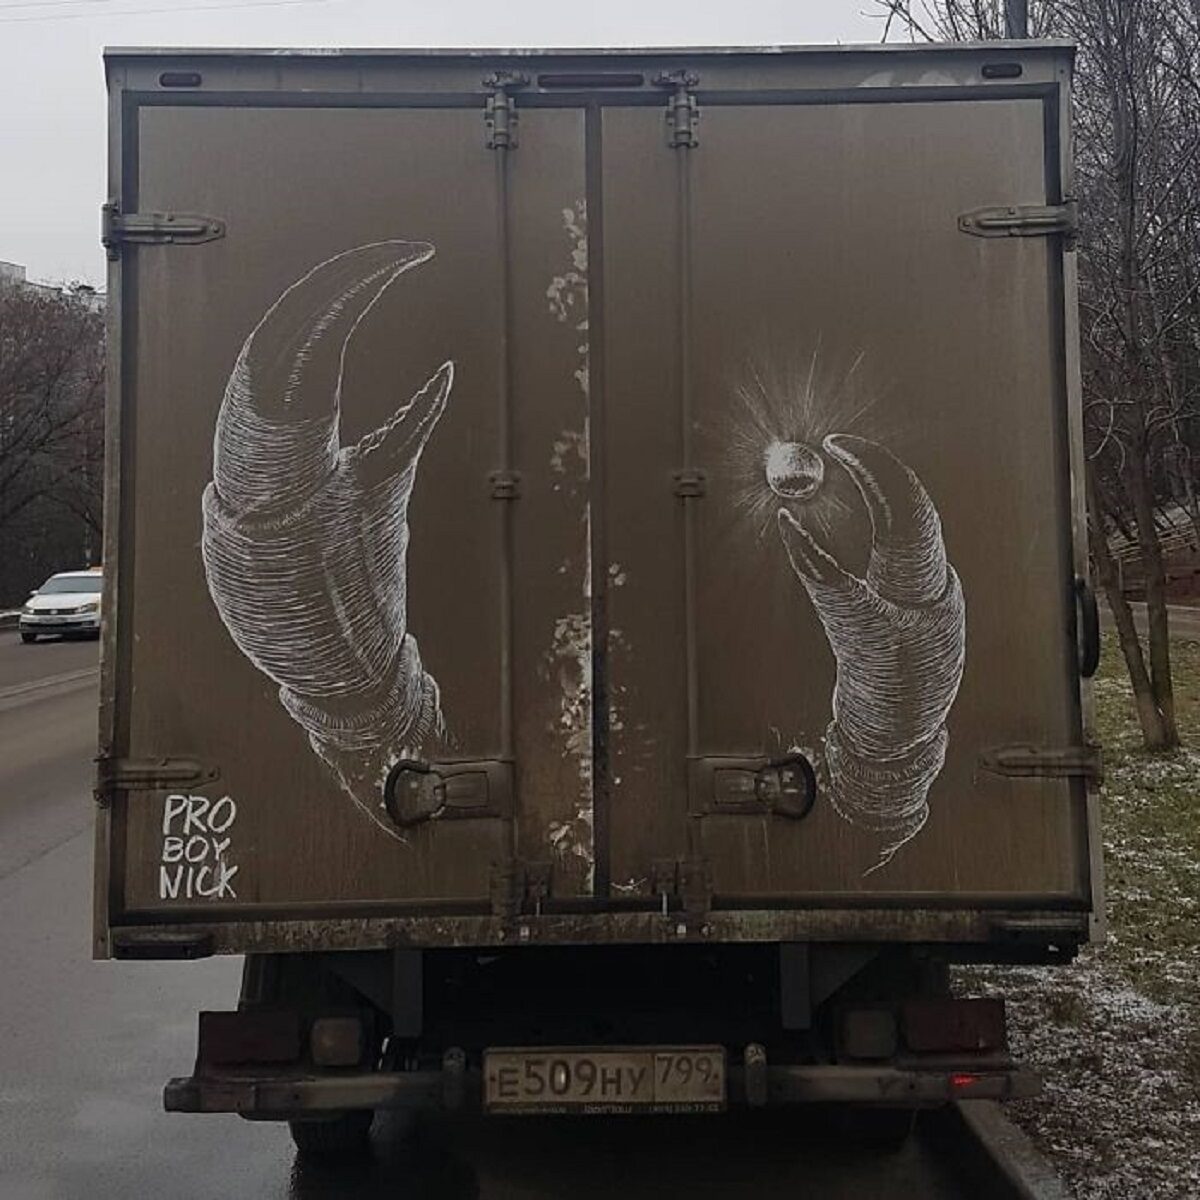 Nikita Golubev artista russa cria desenhos incriveis em caminhoes e tecnica chama atencao 21